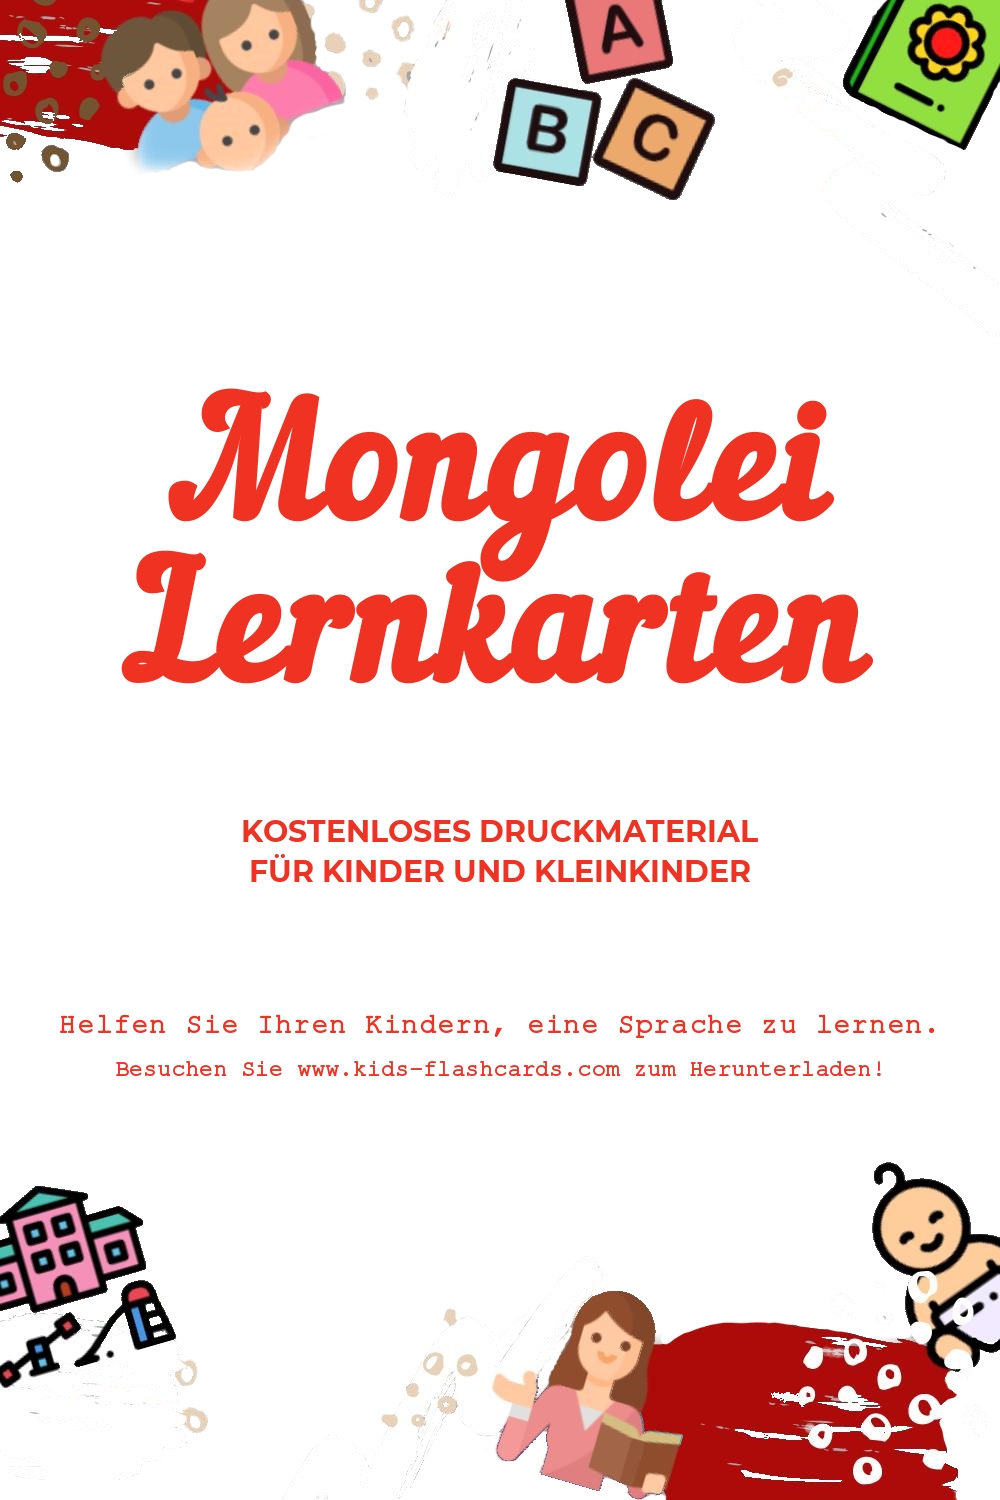 Arbeitsblätter zum Erlernen der Mongoleien Sprache